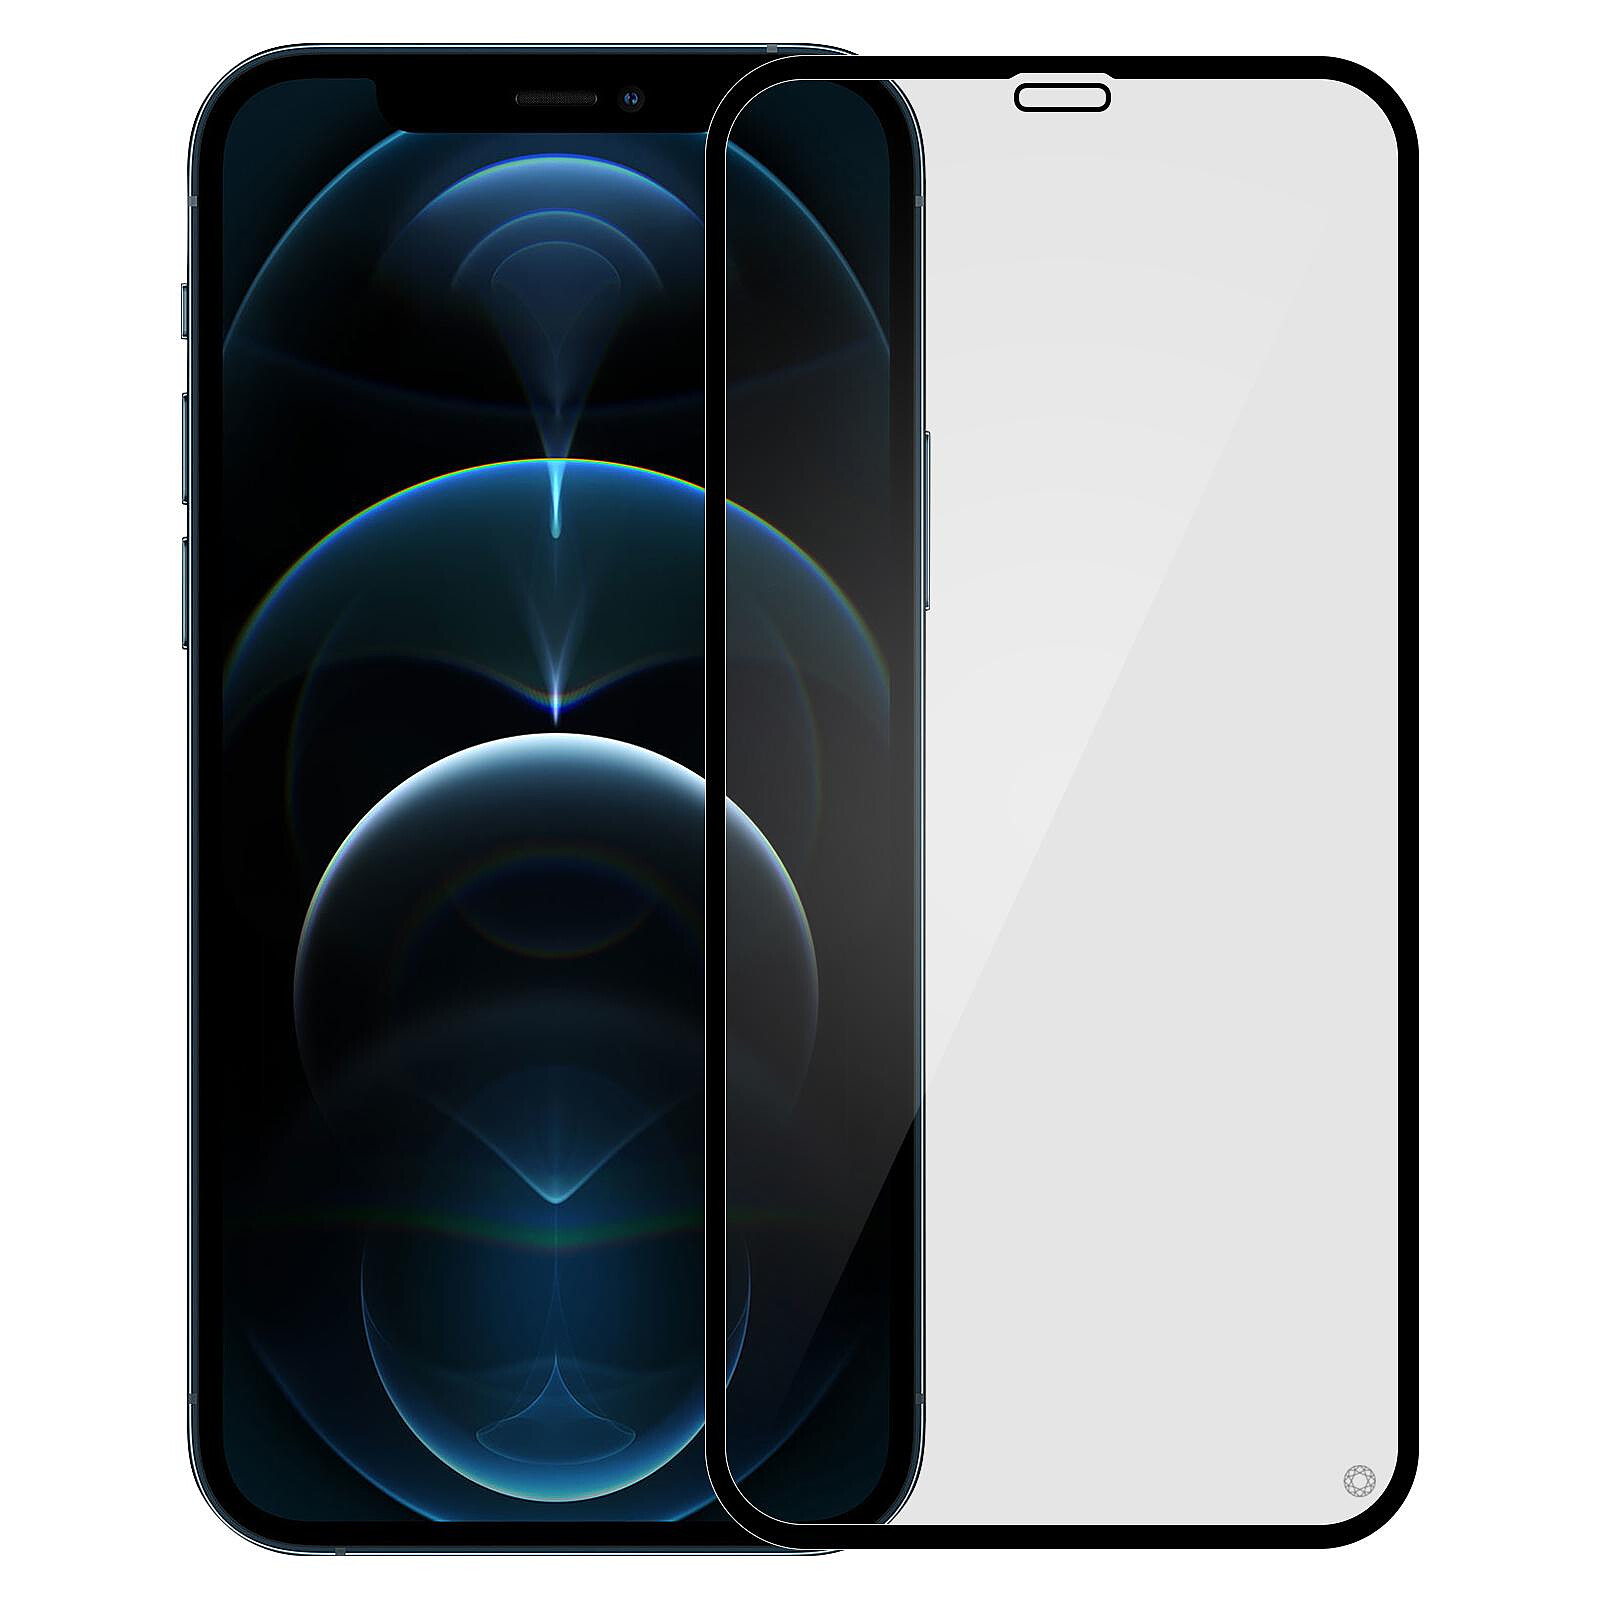 Force Glass Protège-écran en verre trempé pour iPhone 11 / iPhone